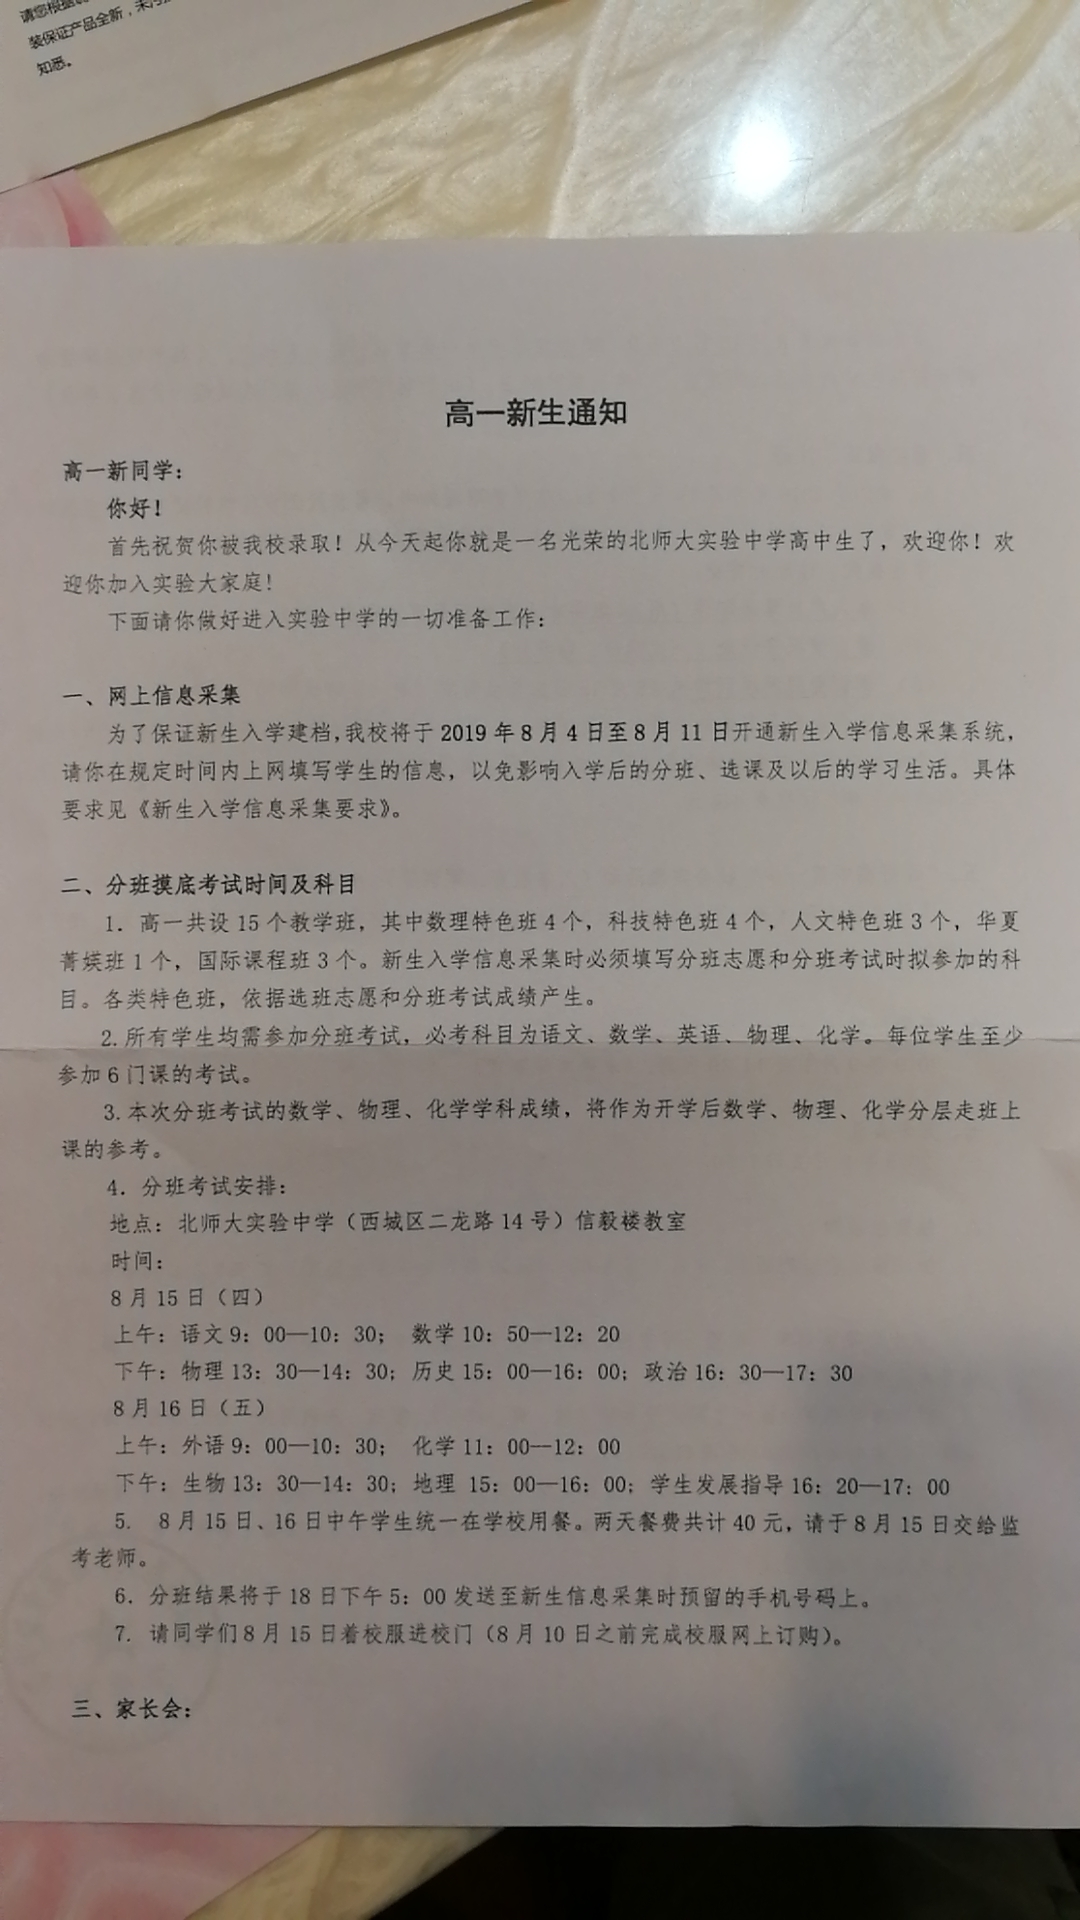 北京师范大学附属实验中学2019年新高一入学测试安排